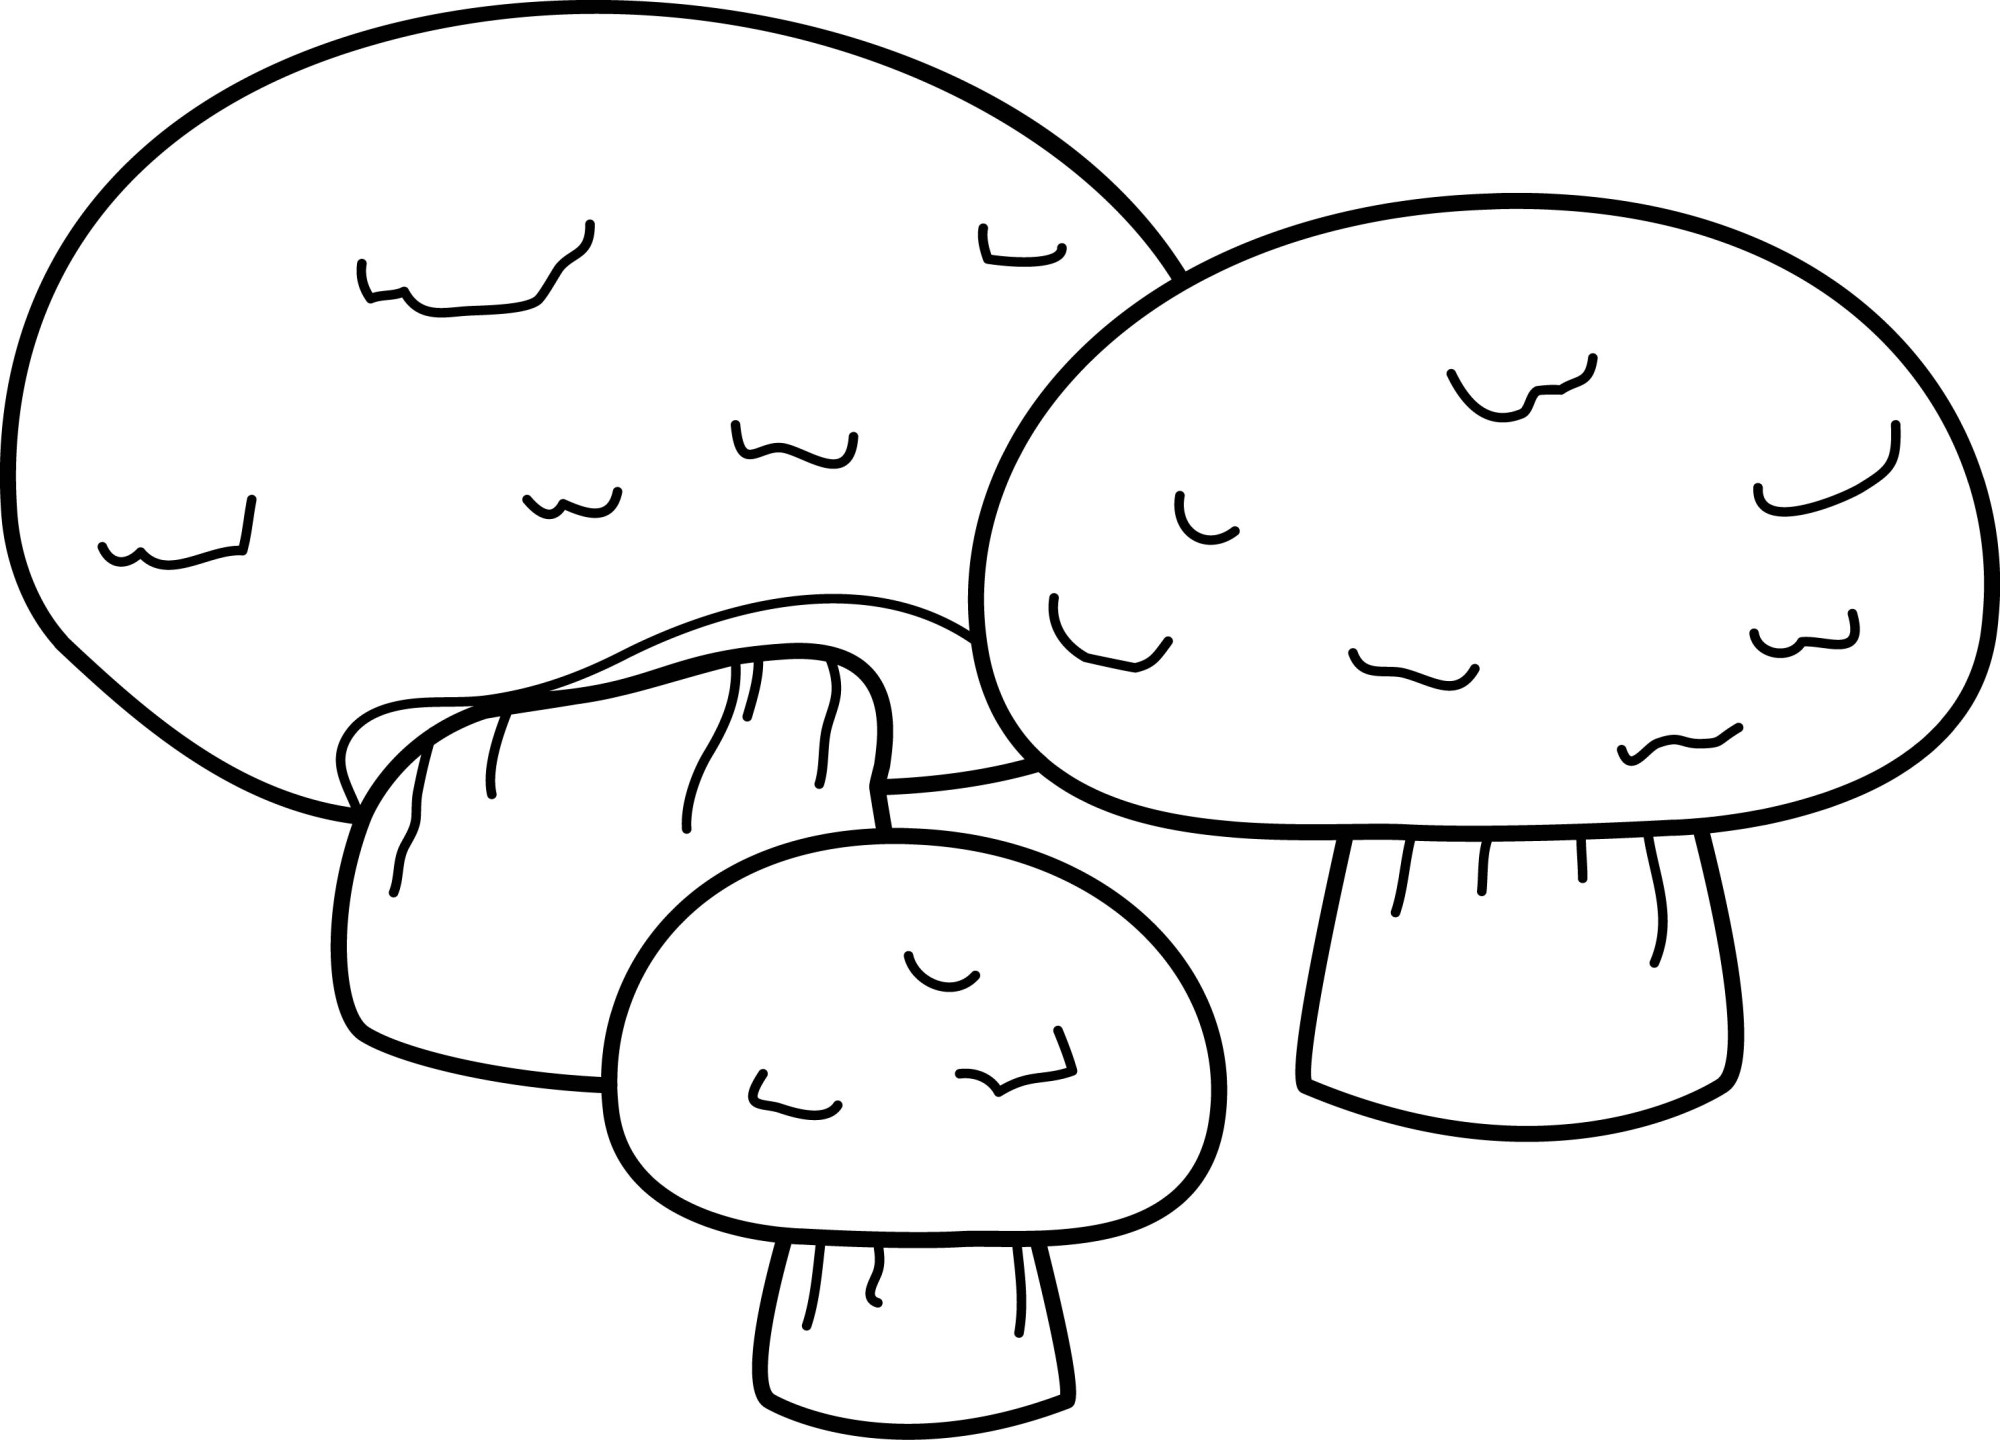 Раскраска для детей: грибы шампиньоны